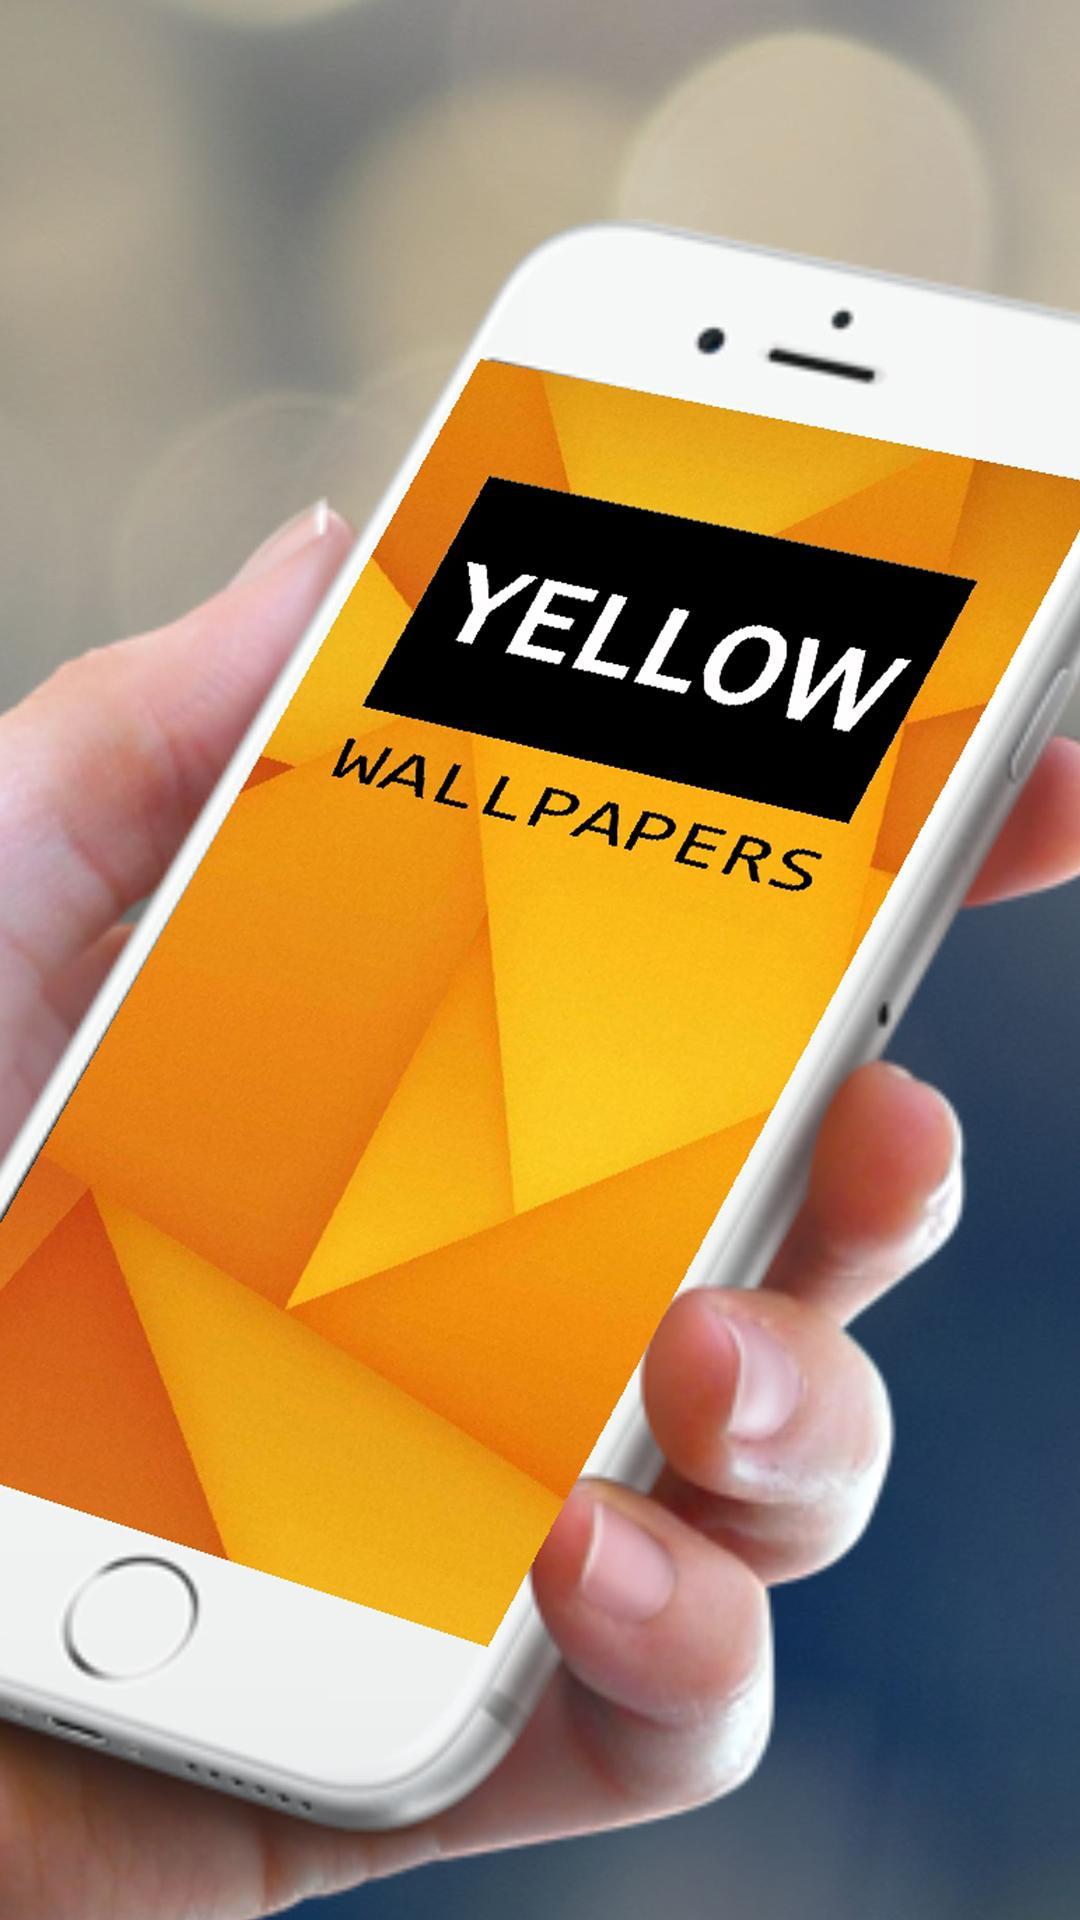 下载Yellow Wallpapers 4K - Fondos Amarillos HD的安卓版本